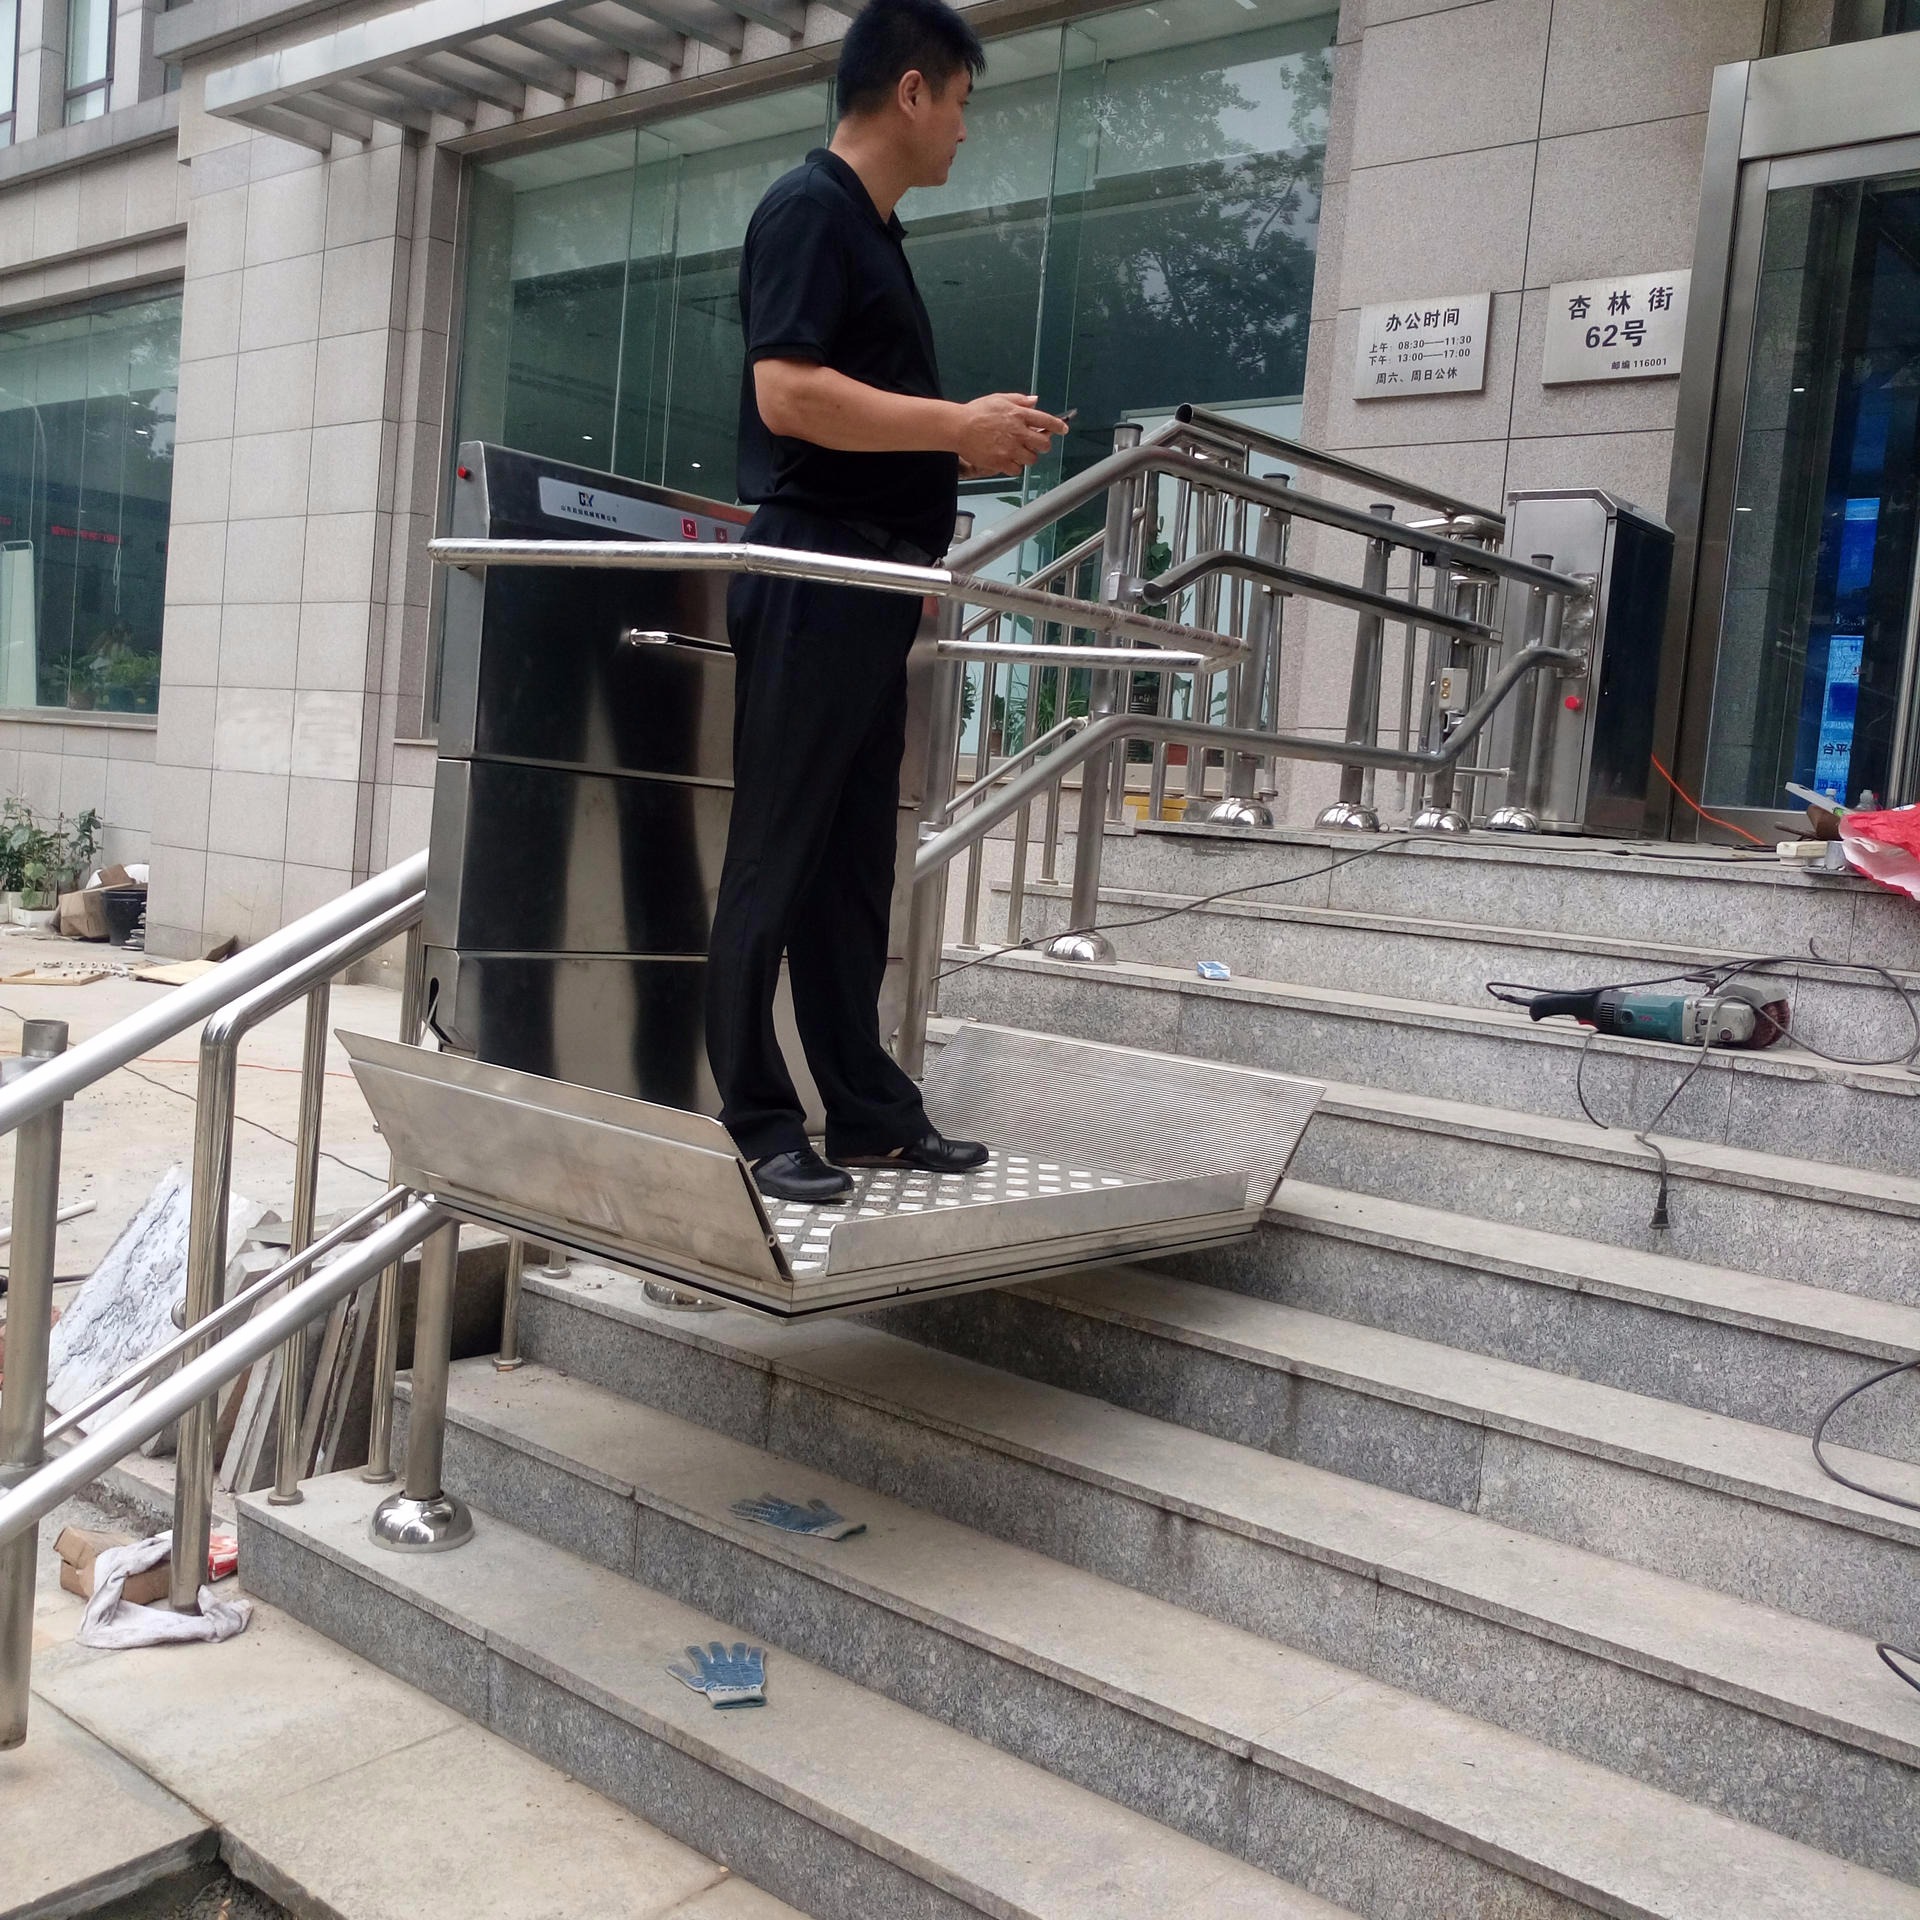 武夷山市厂家直销楼道电梯 轮椅爬楼升降台 残疾人自动爬楼机 北京市斜挂电梯供应